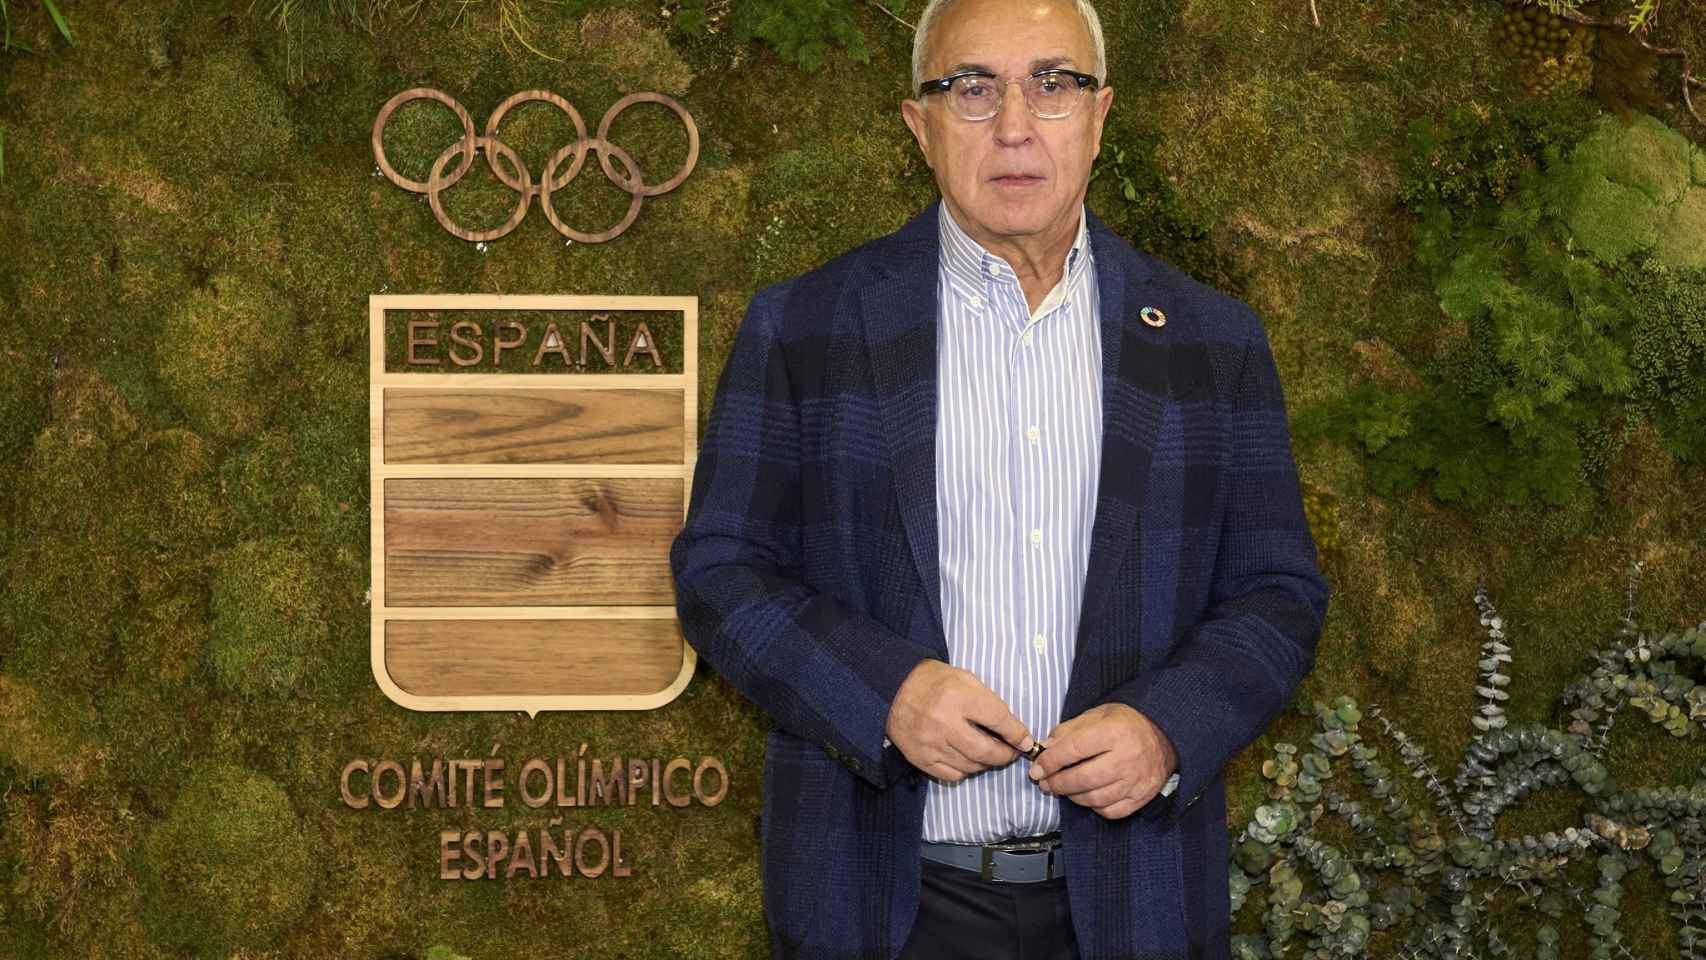 El presidente del Comité Olímpico Español (COE), Alejandro Blanco, en una imagen de archivo / DIEGO SOUTO - EUROPA PRESS